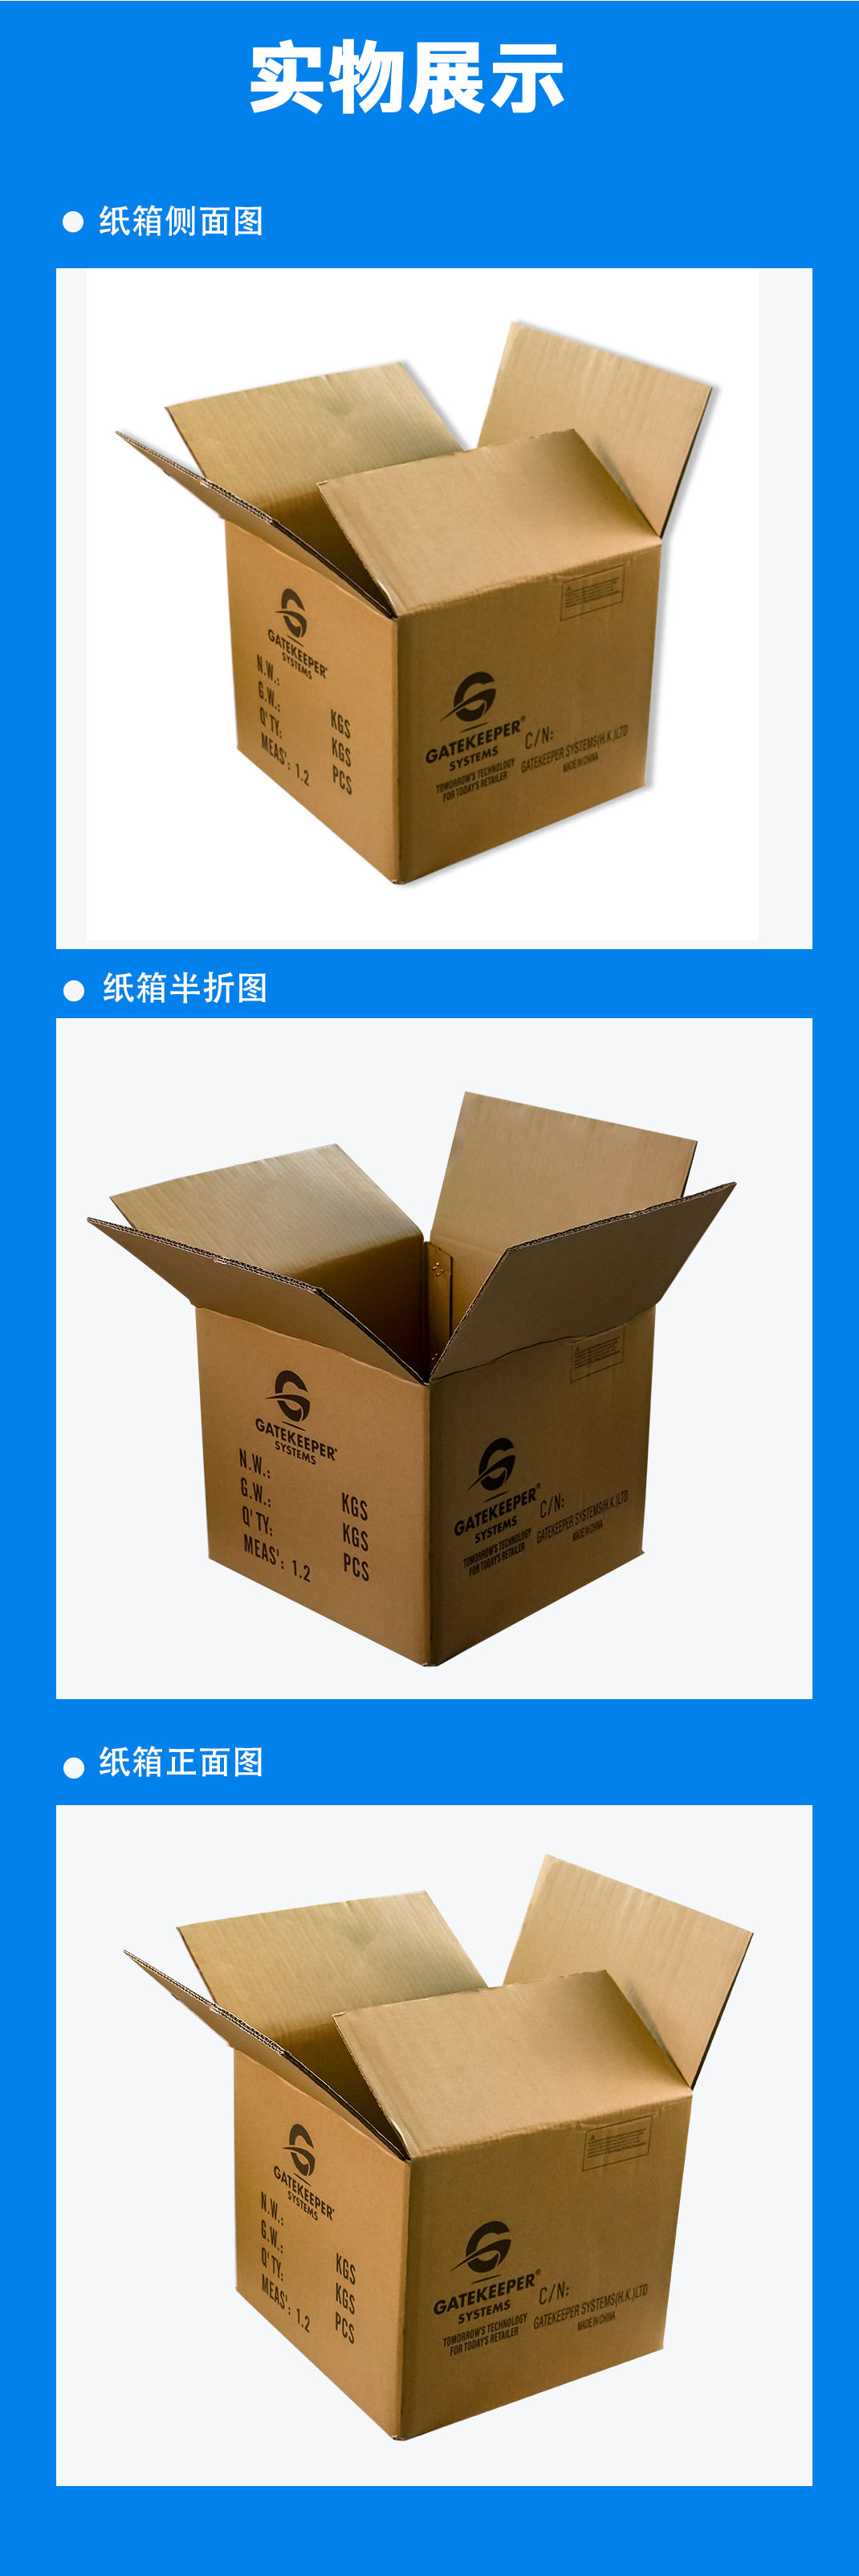 九江市纸箱常用的印刷分类